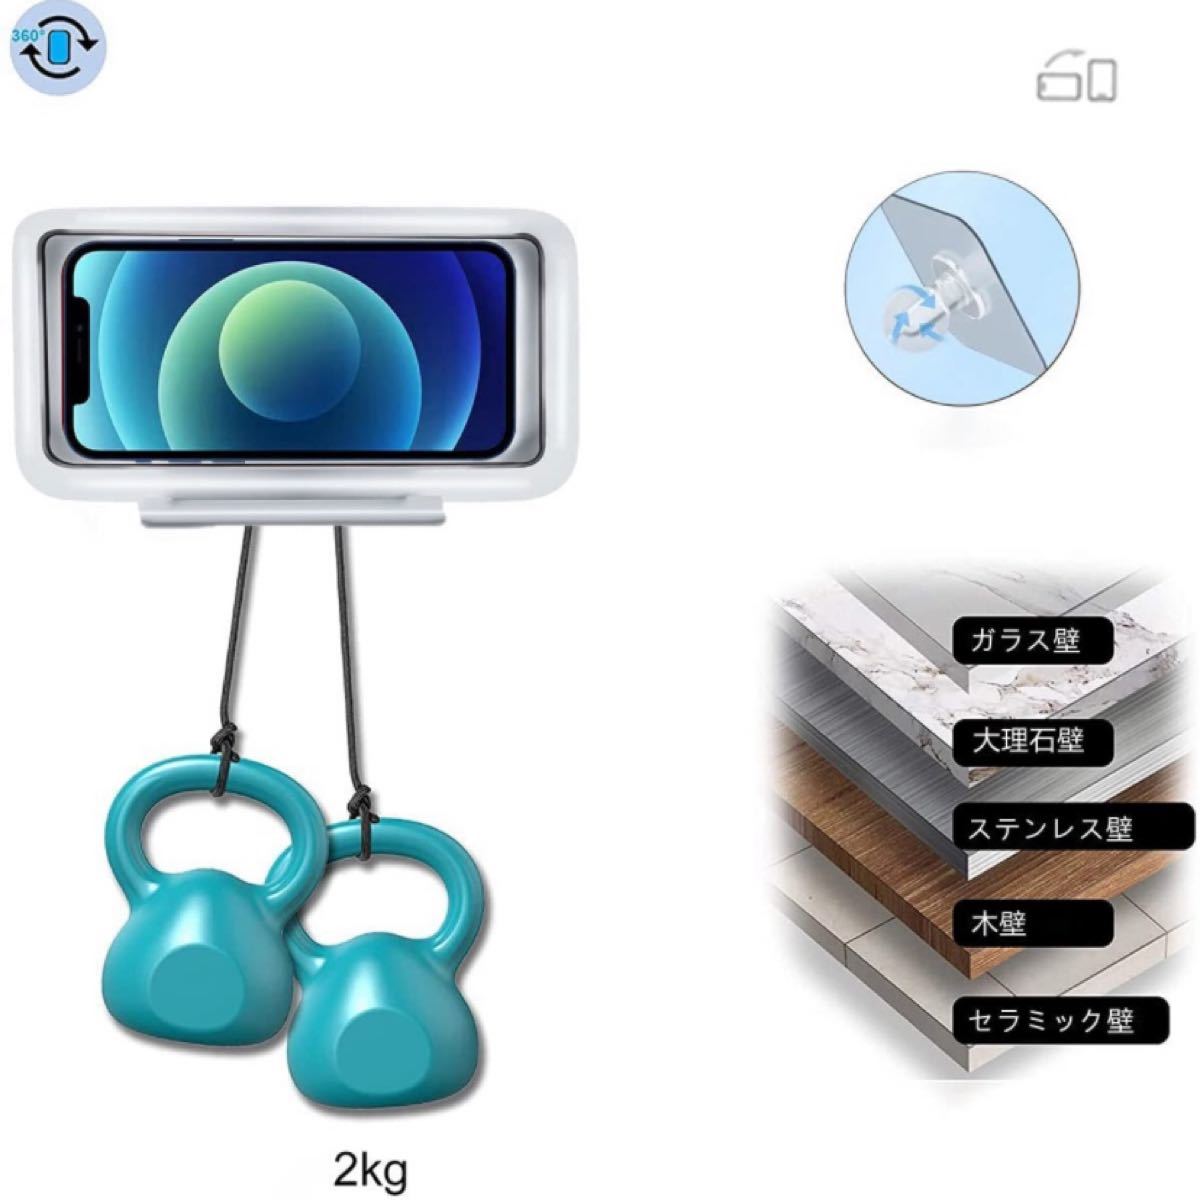 【新品未使用】liang14 スマホ iPhone 防水ケース 360度回転